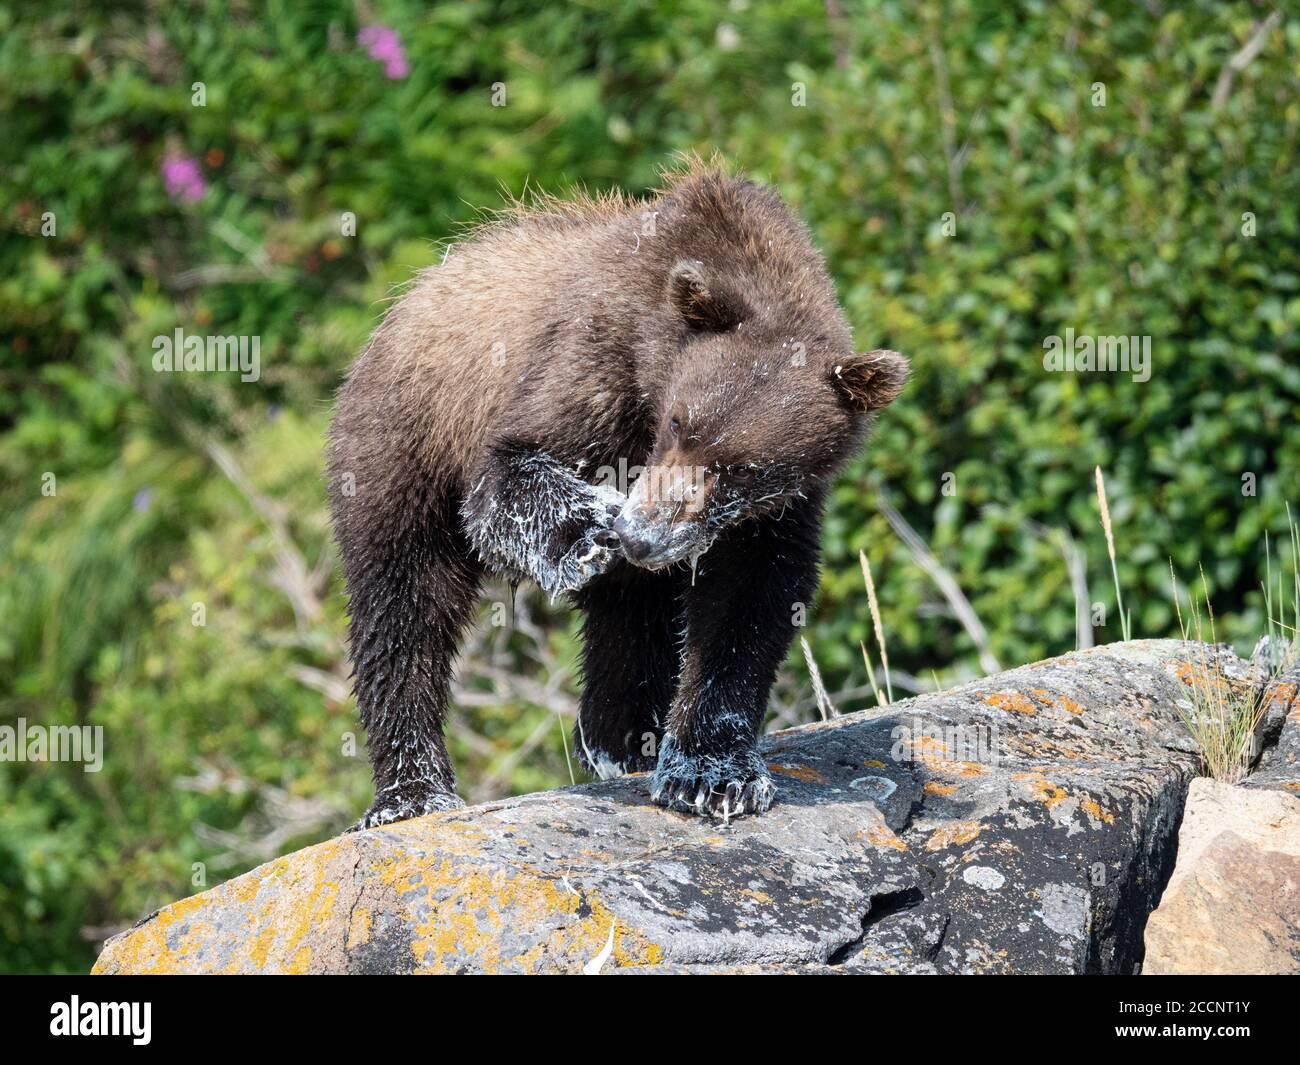 Jeune ours brun, Ursus arctos, se nourrissant du béluga mort, Geographic Harbour, parc national de Katmai, Alaska, États-Unis. Banque D'Images